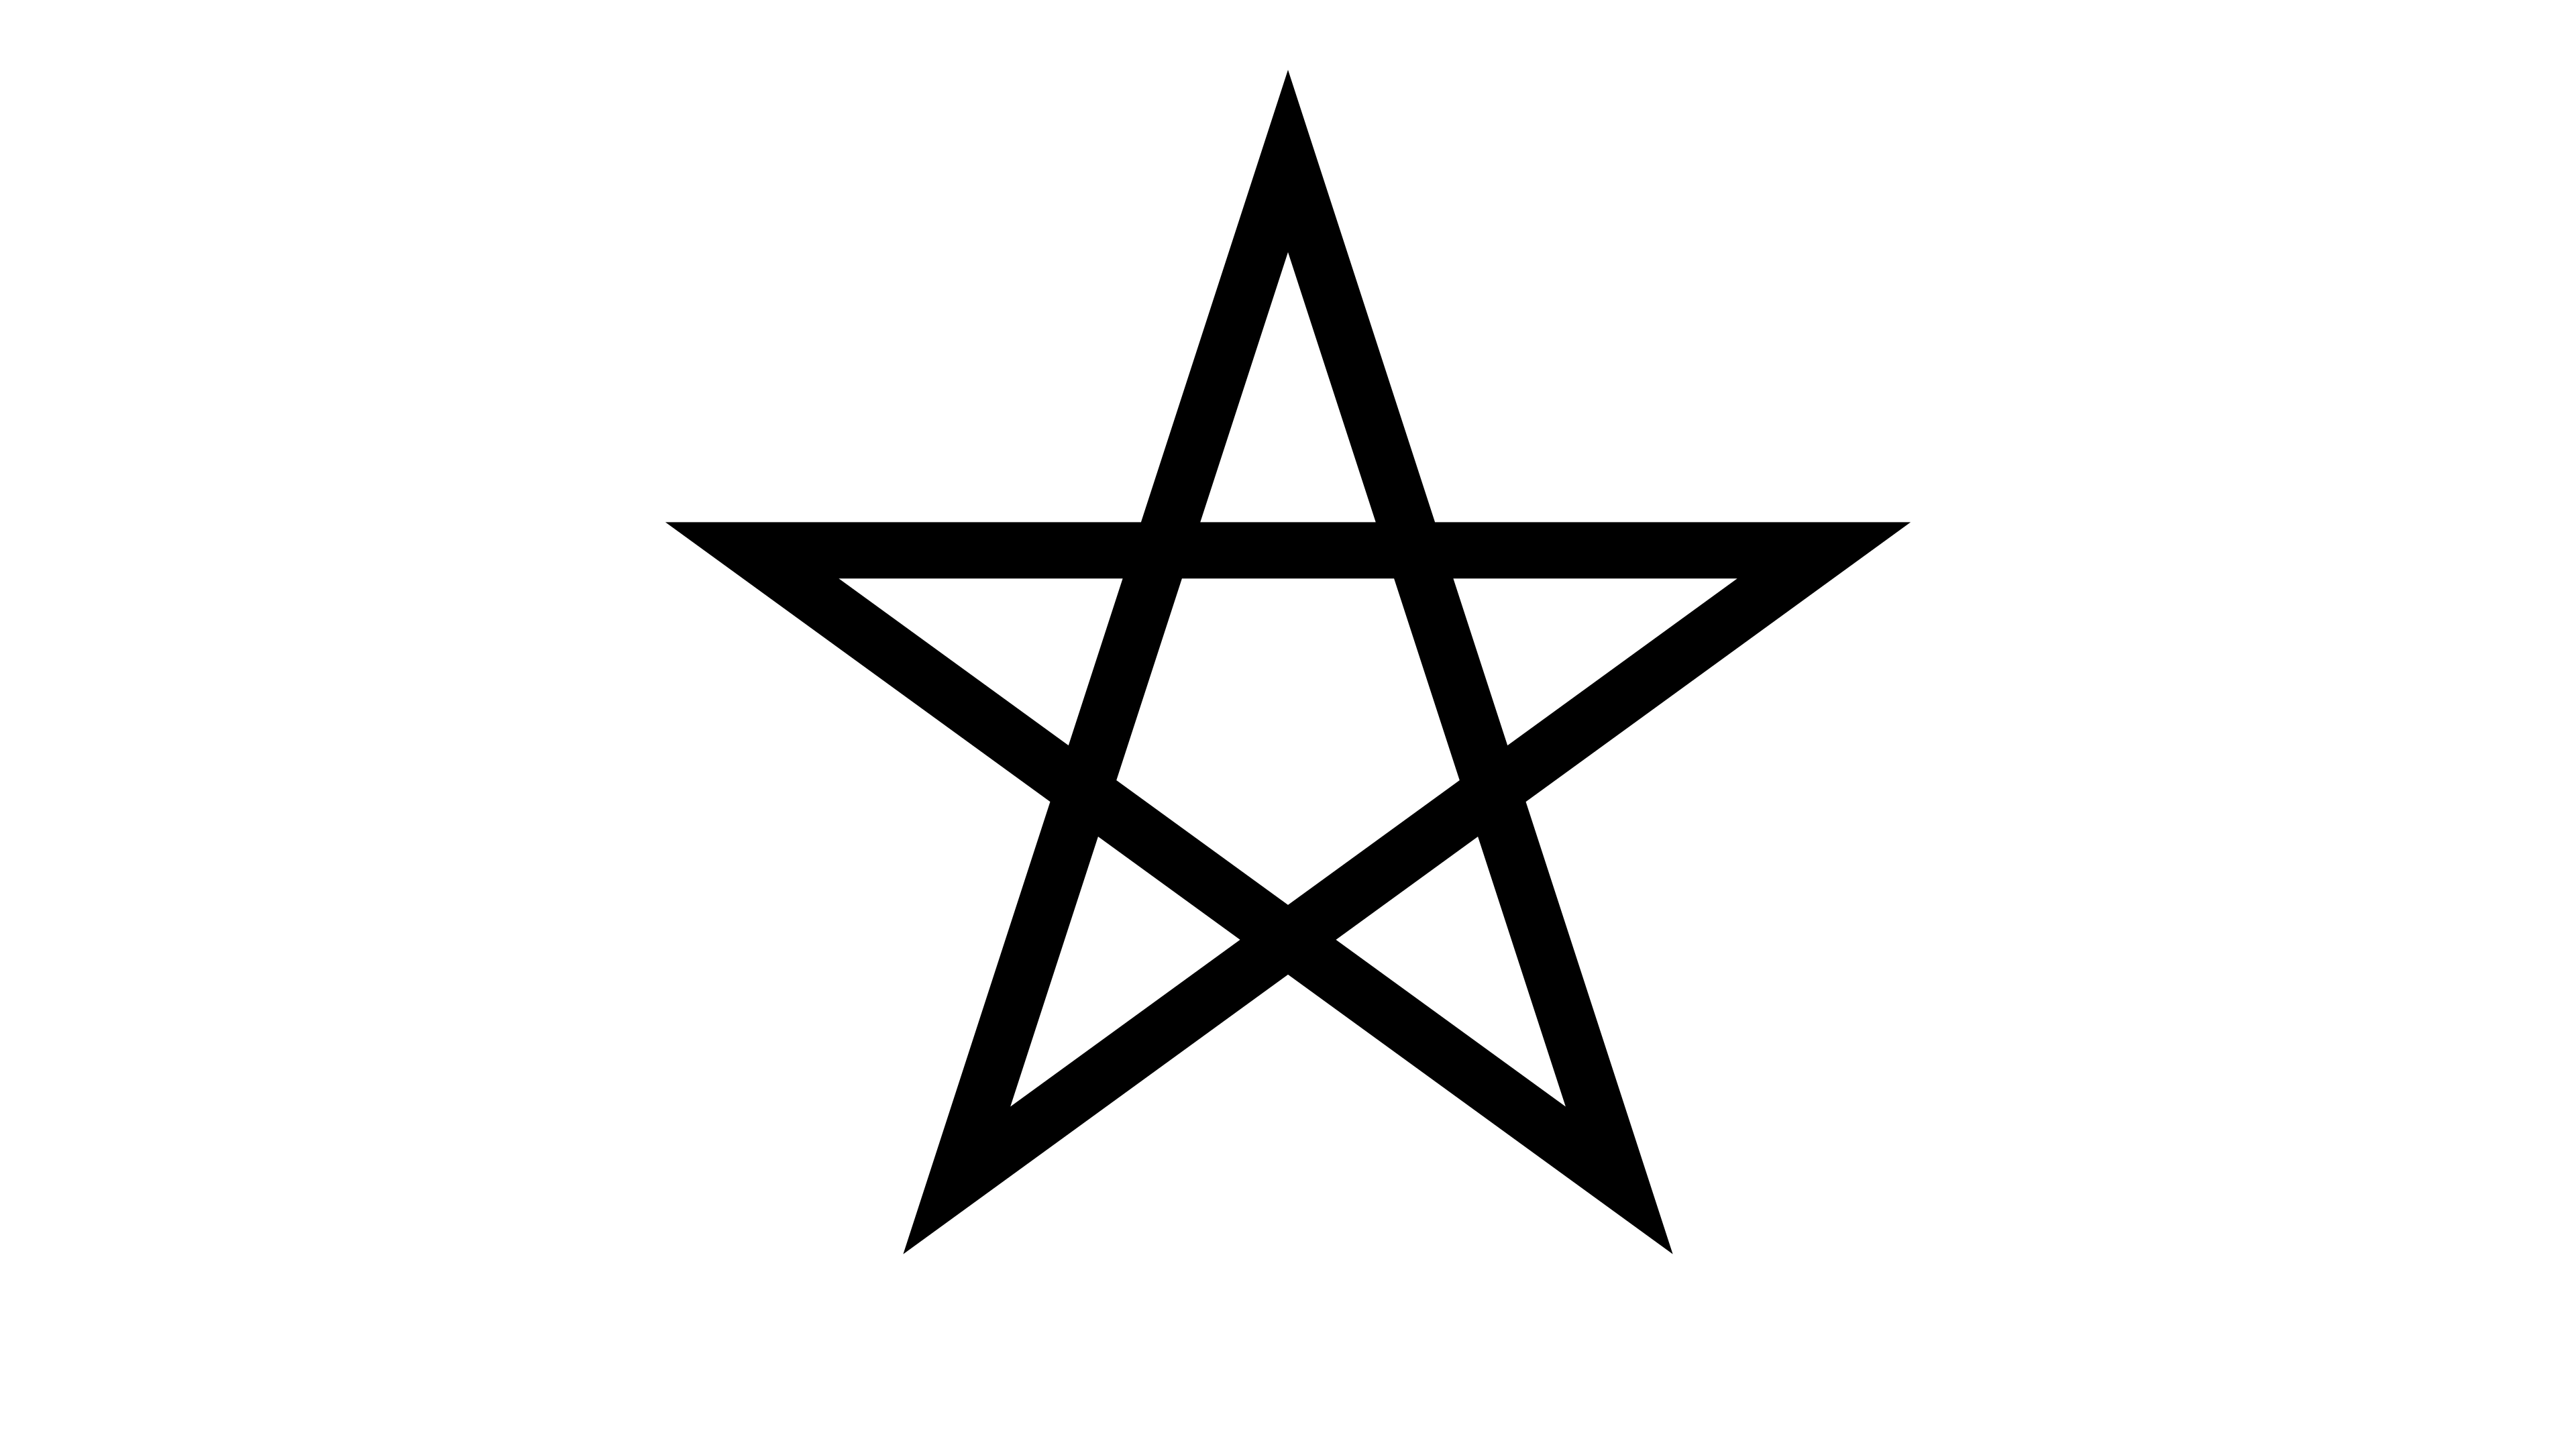 static symmetric star/pentagram